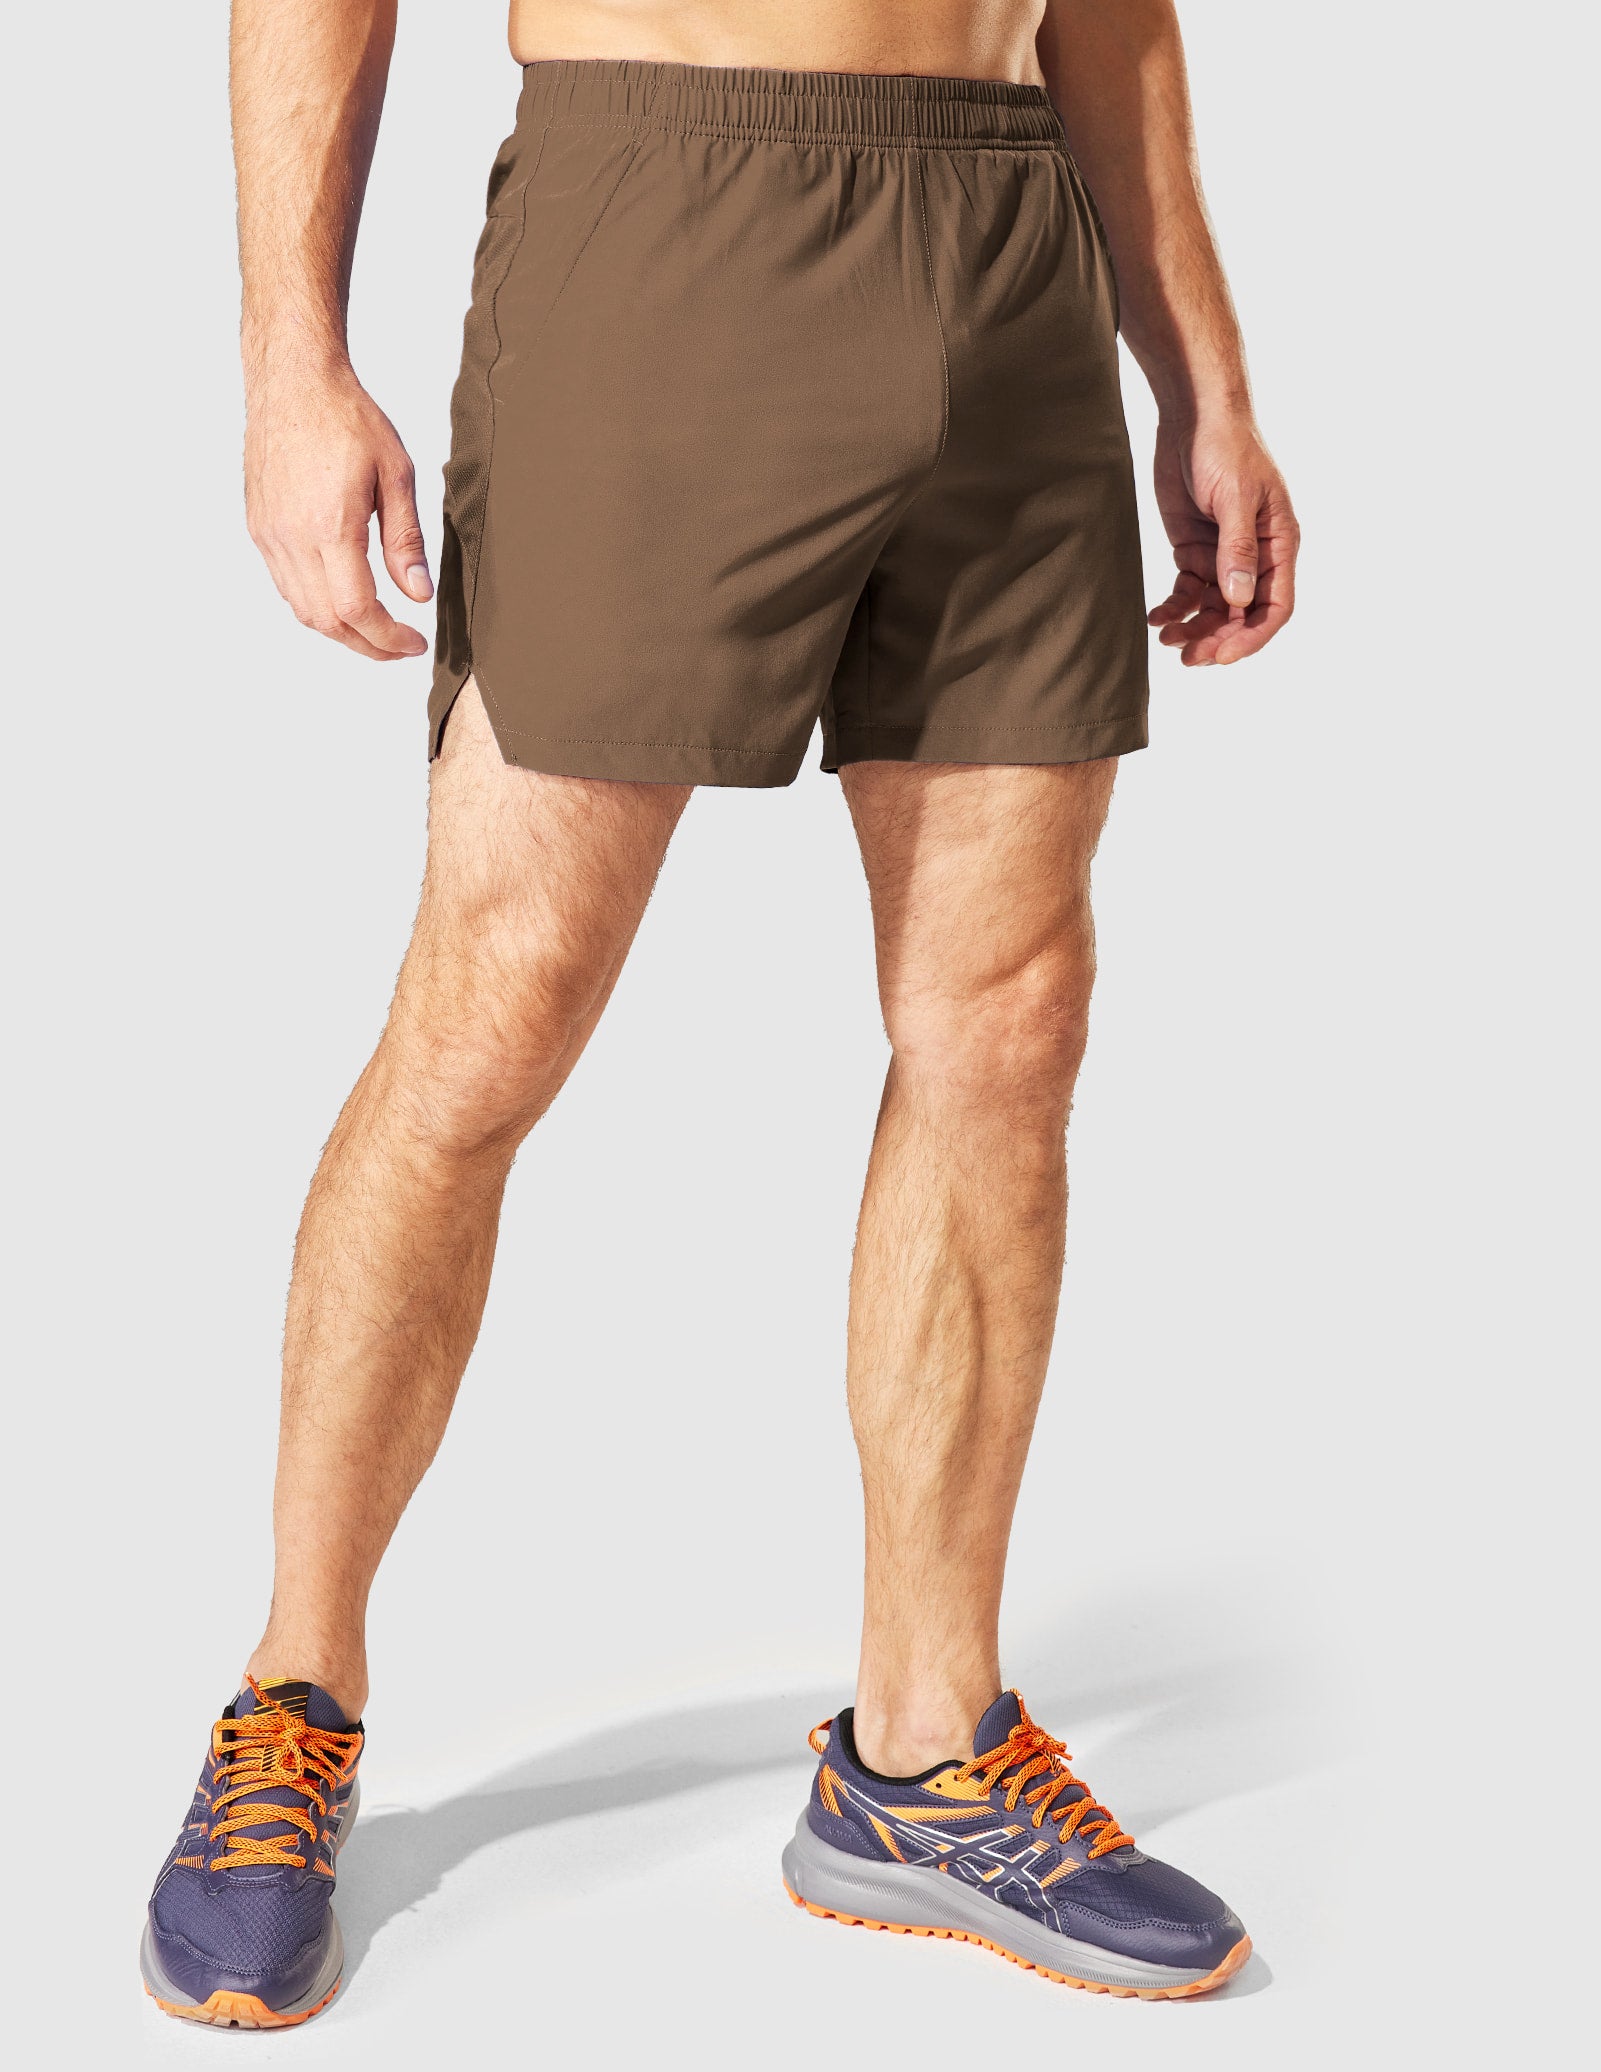 Pantalones cortos de entrenamiento para hombre Pantalones cortos activos de 5 pulgadas con bolsillos